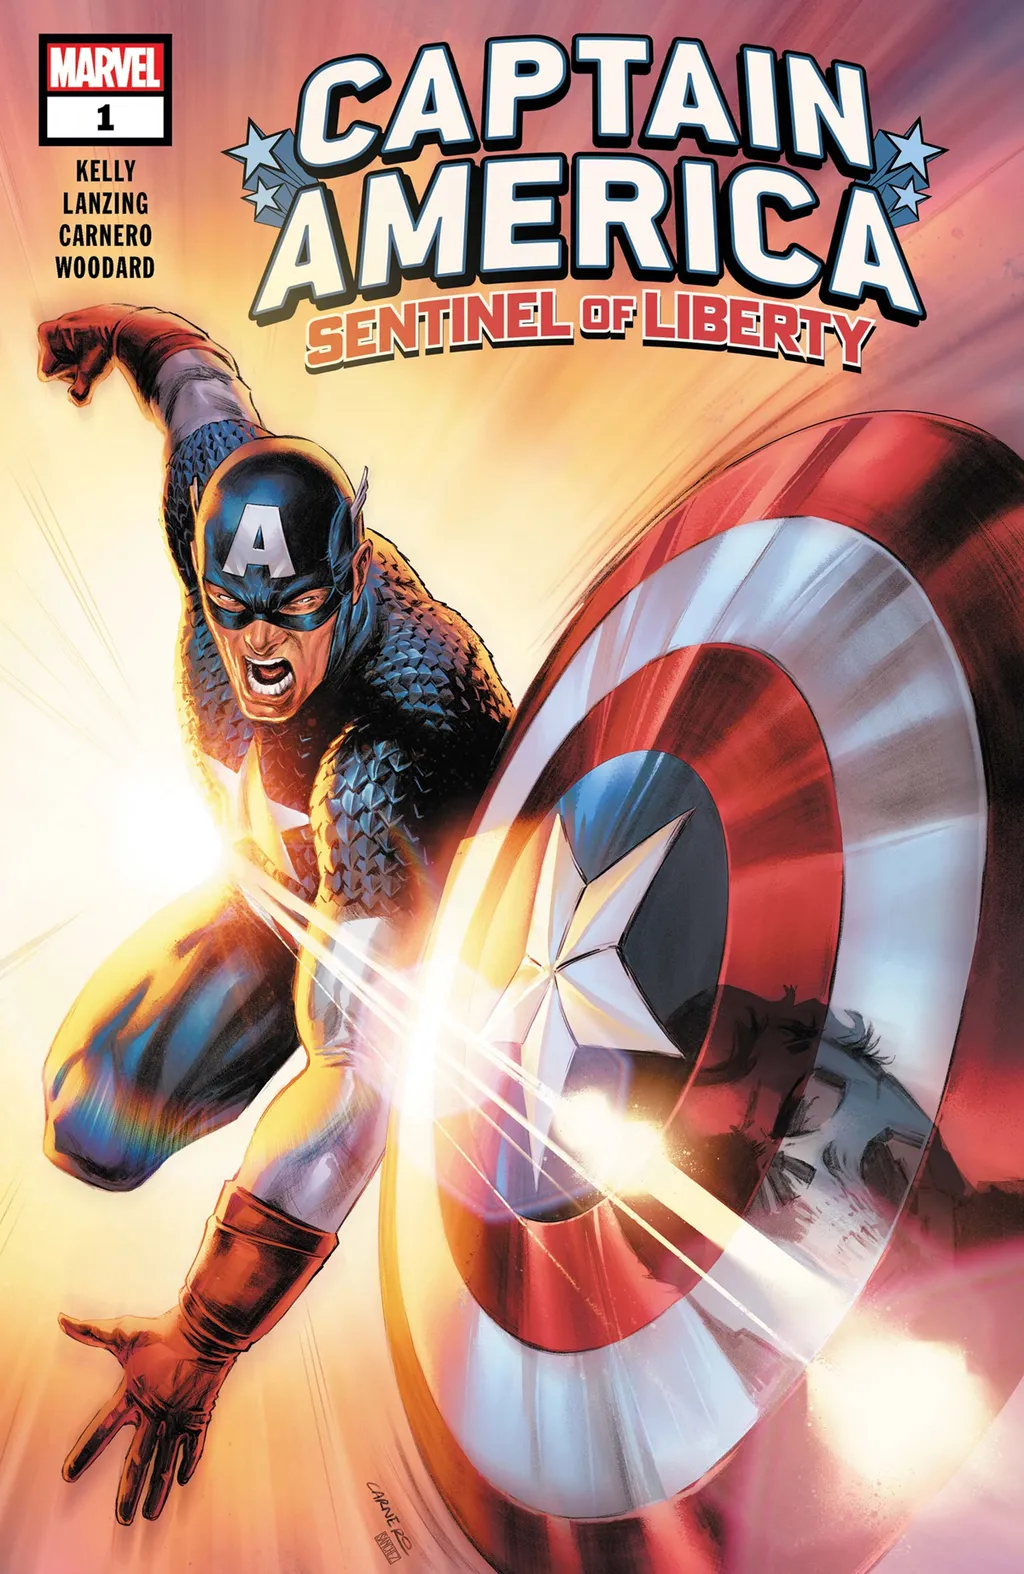 Edição do novo título do Capitão América chegou às bancas na semana passada (Imagem: Reprodução/Marvel Comics)